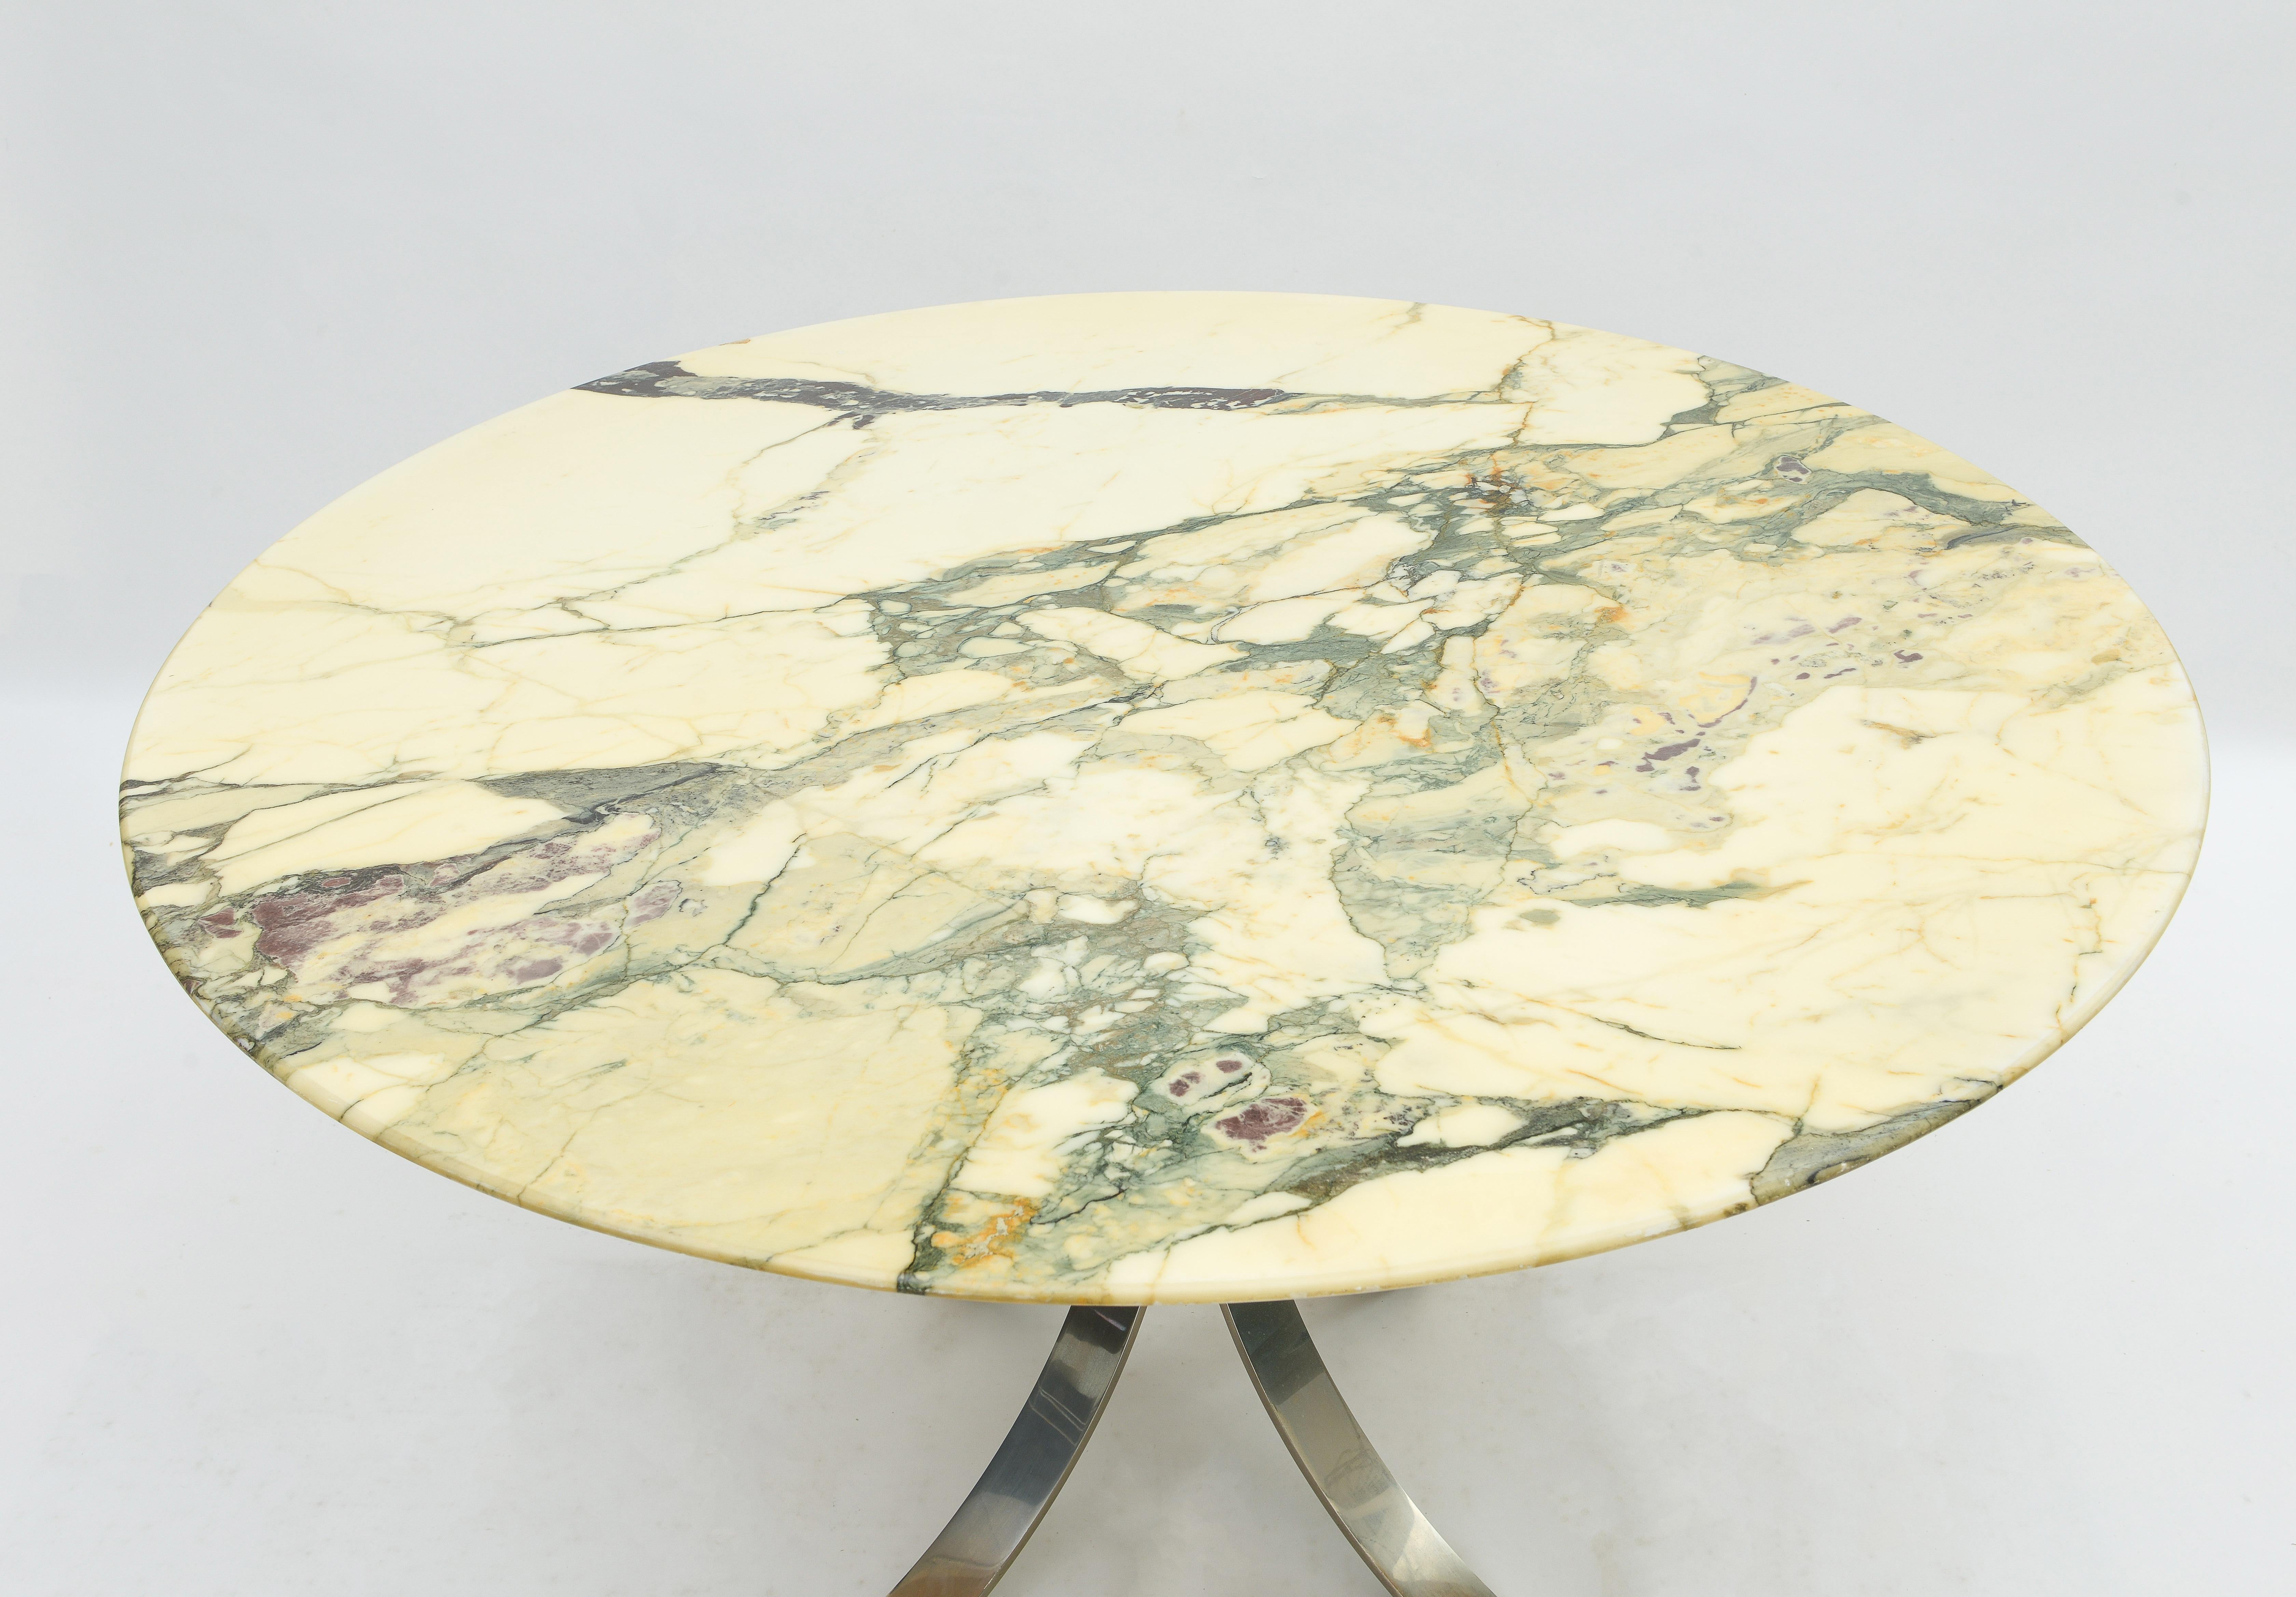 Table en marbre veiné vintage en très bon état avec des veines incroyables. Socle chromé.
Parfait pour tout type de décor. Osvaldo Borsani, beau marbre.